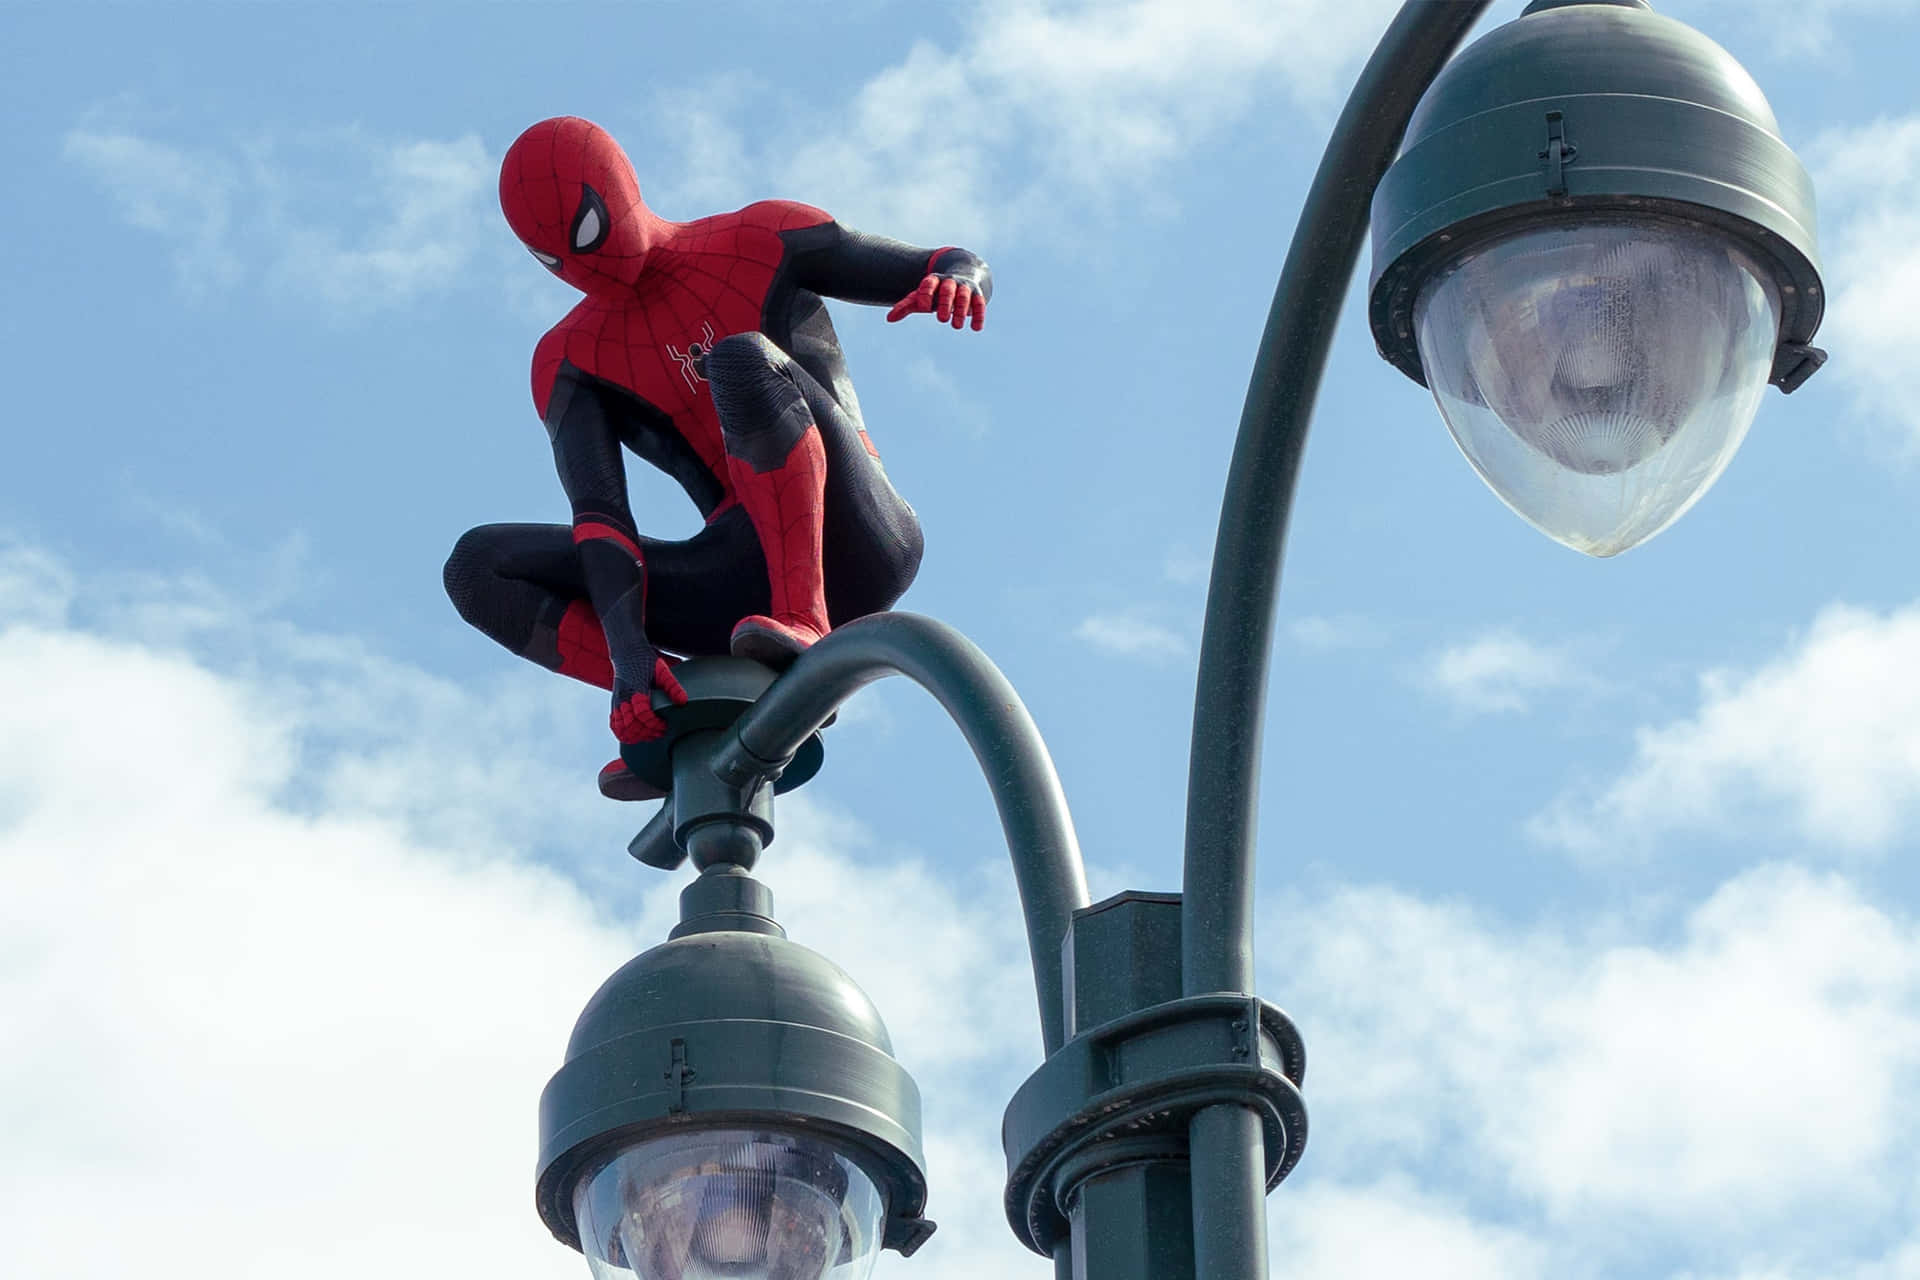 Spiderman Er Tilbage I Den Spændende Nye Film, Spider Man: No Way Home.